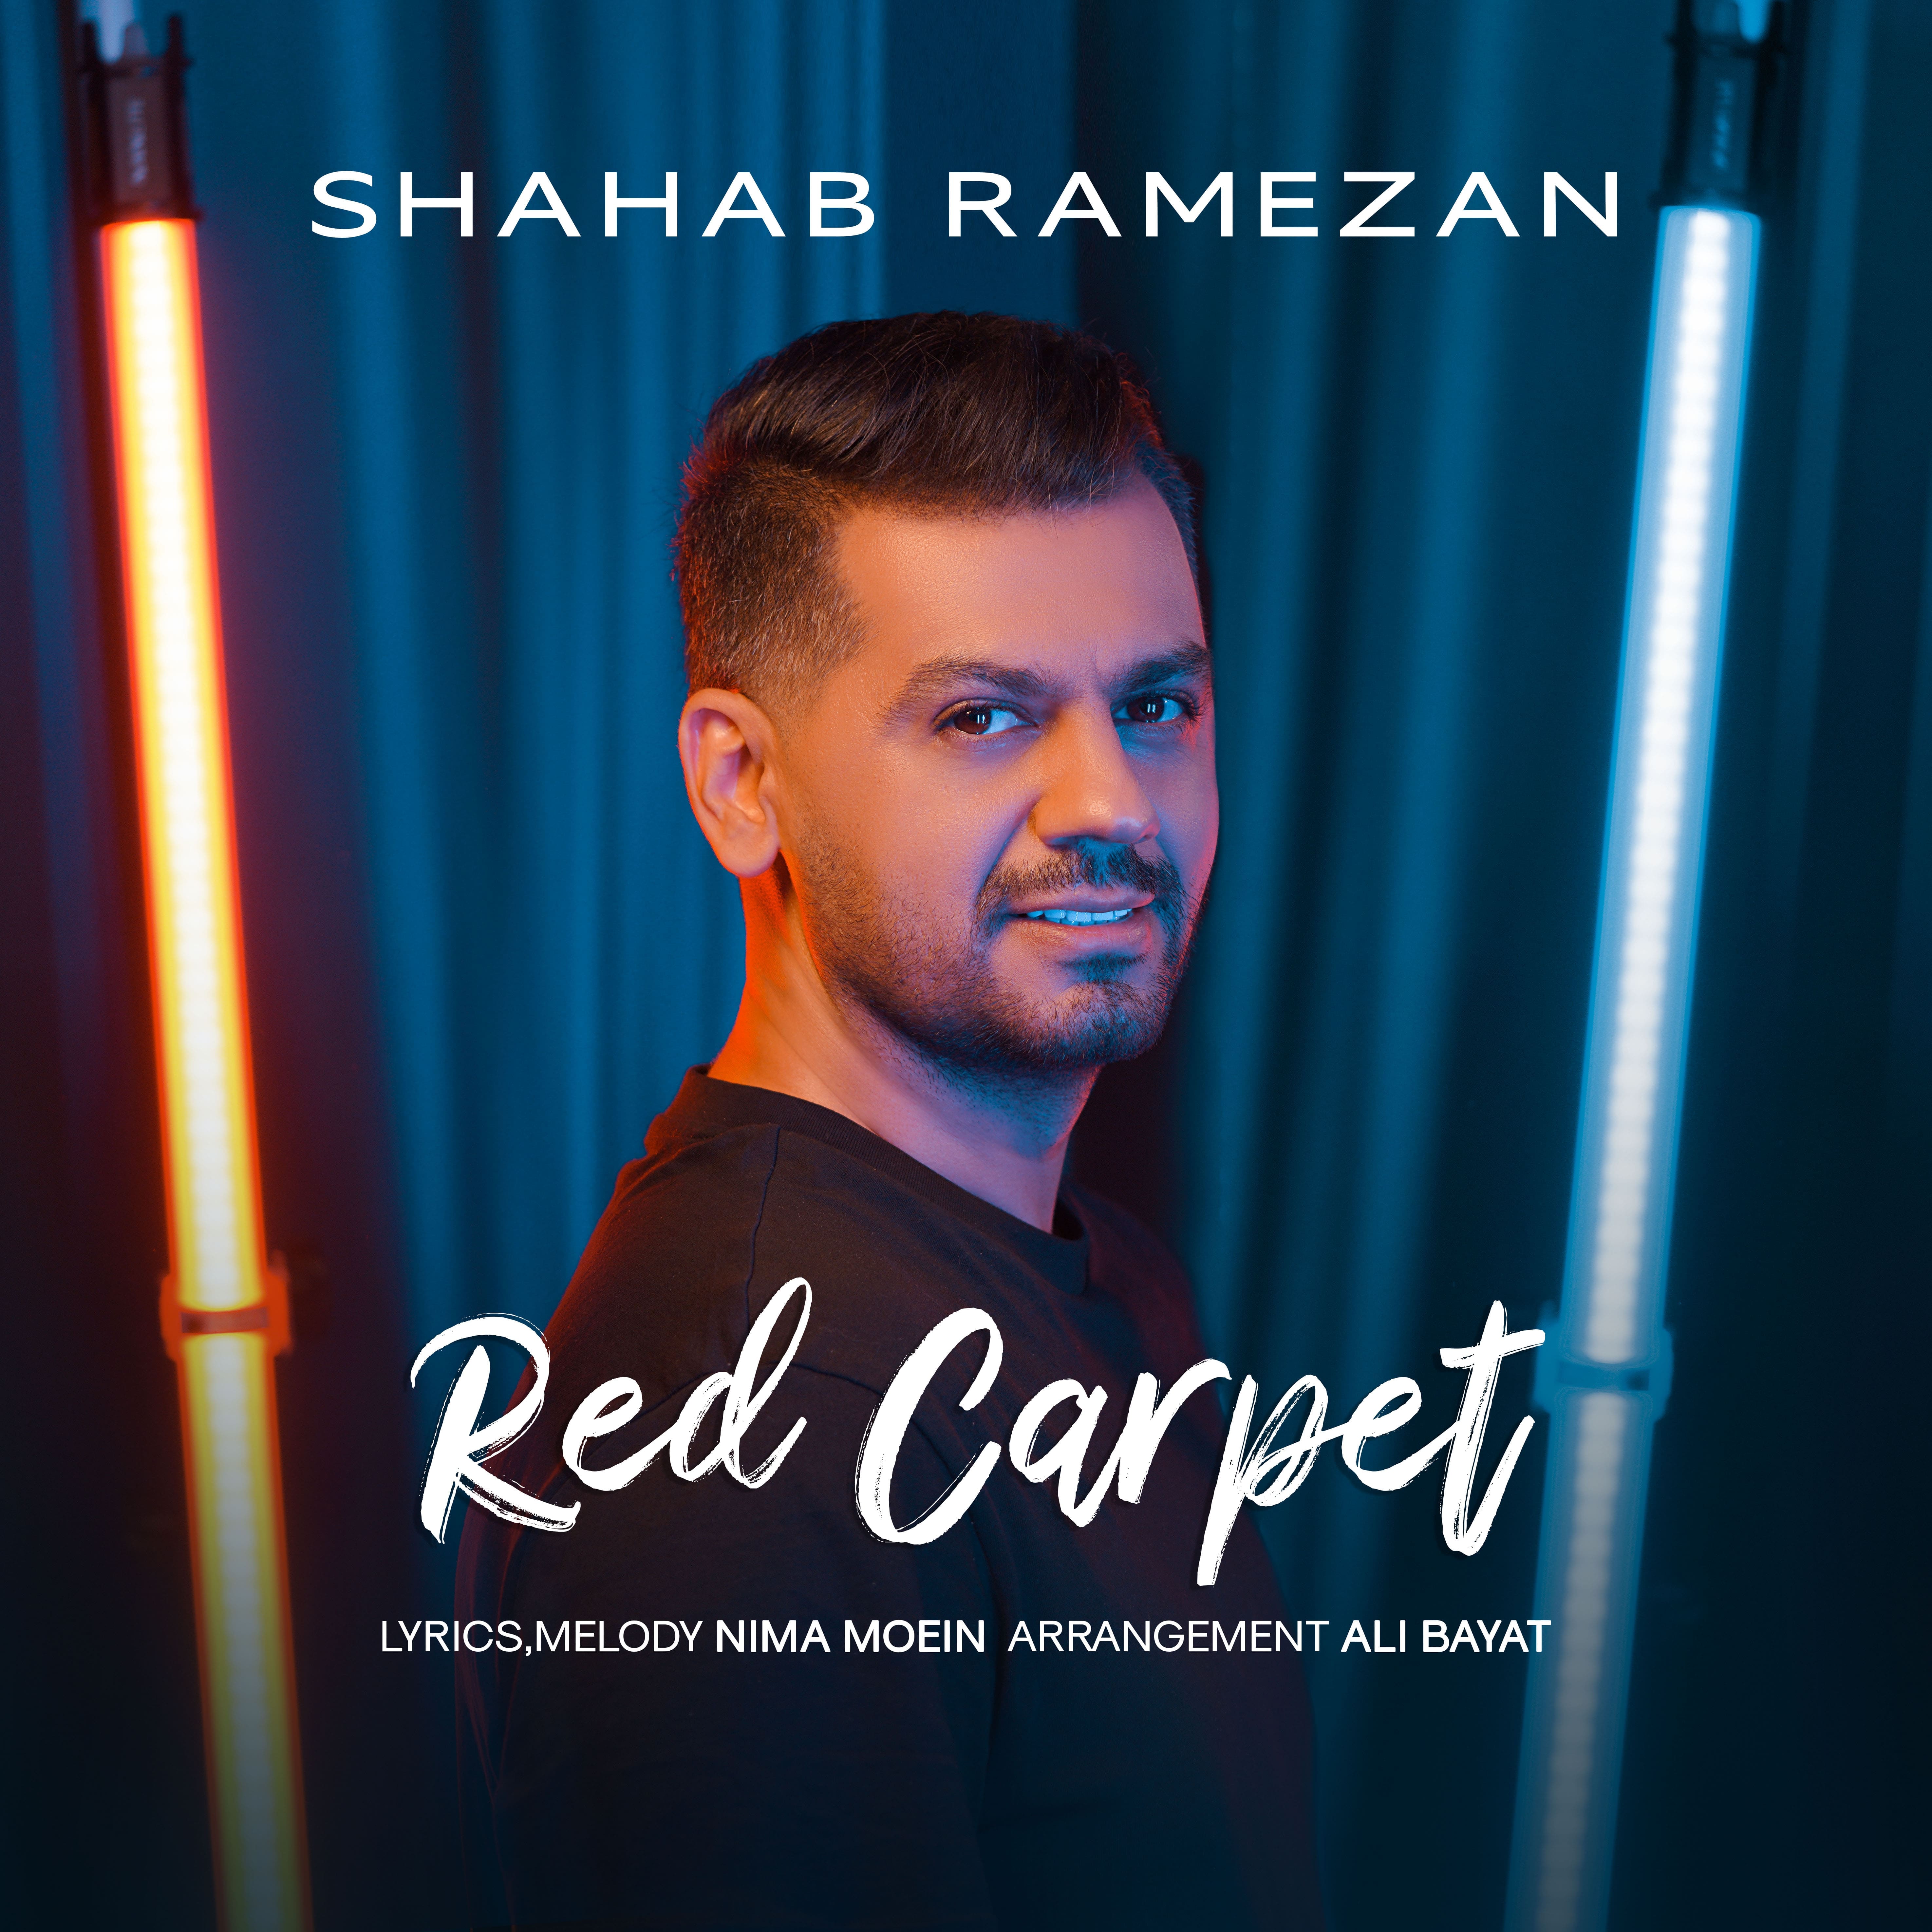 دانلود اهنگ شهاب رمضان فرش قرمز